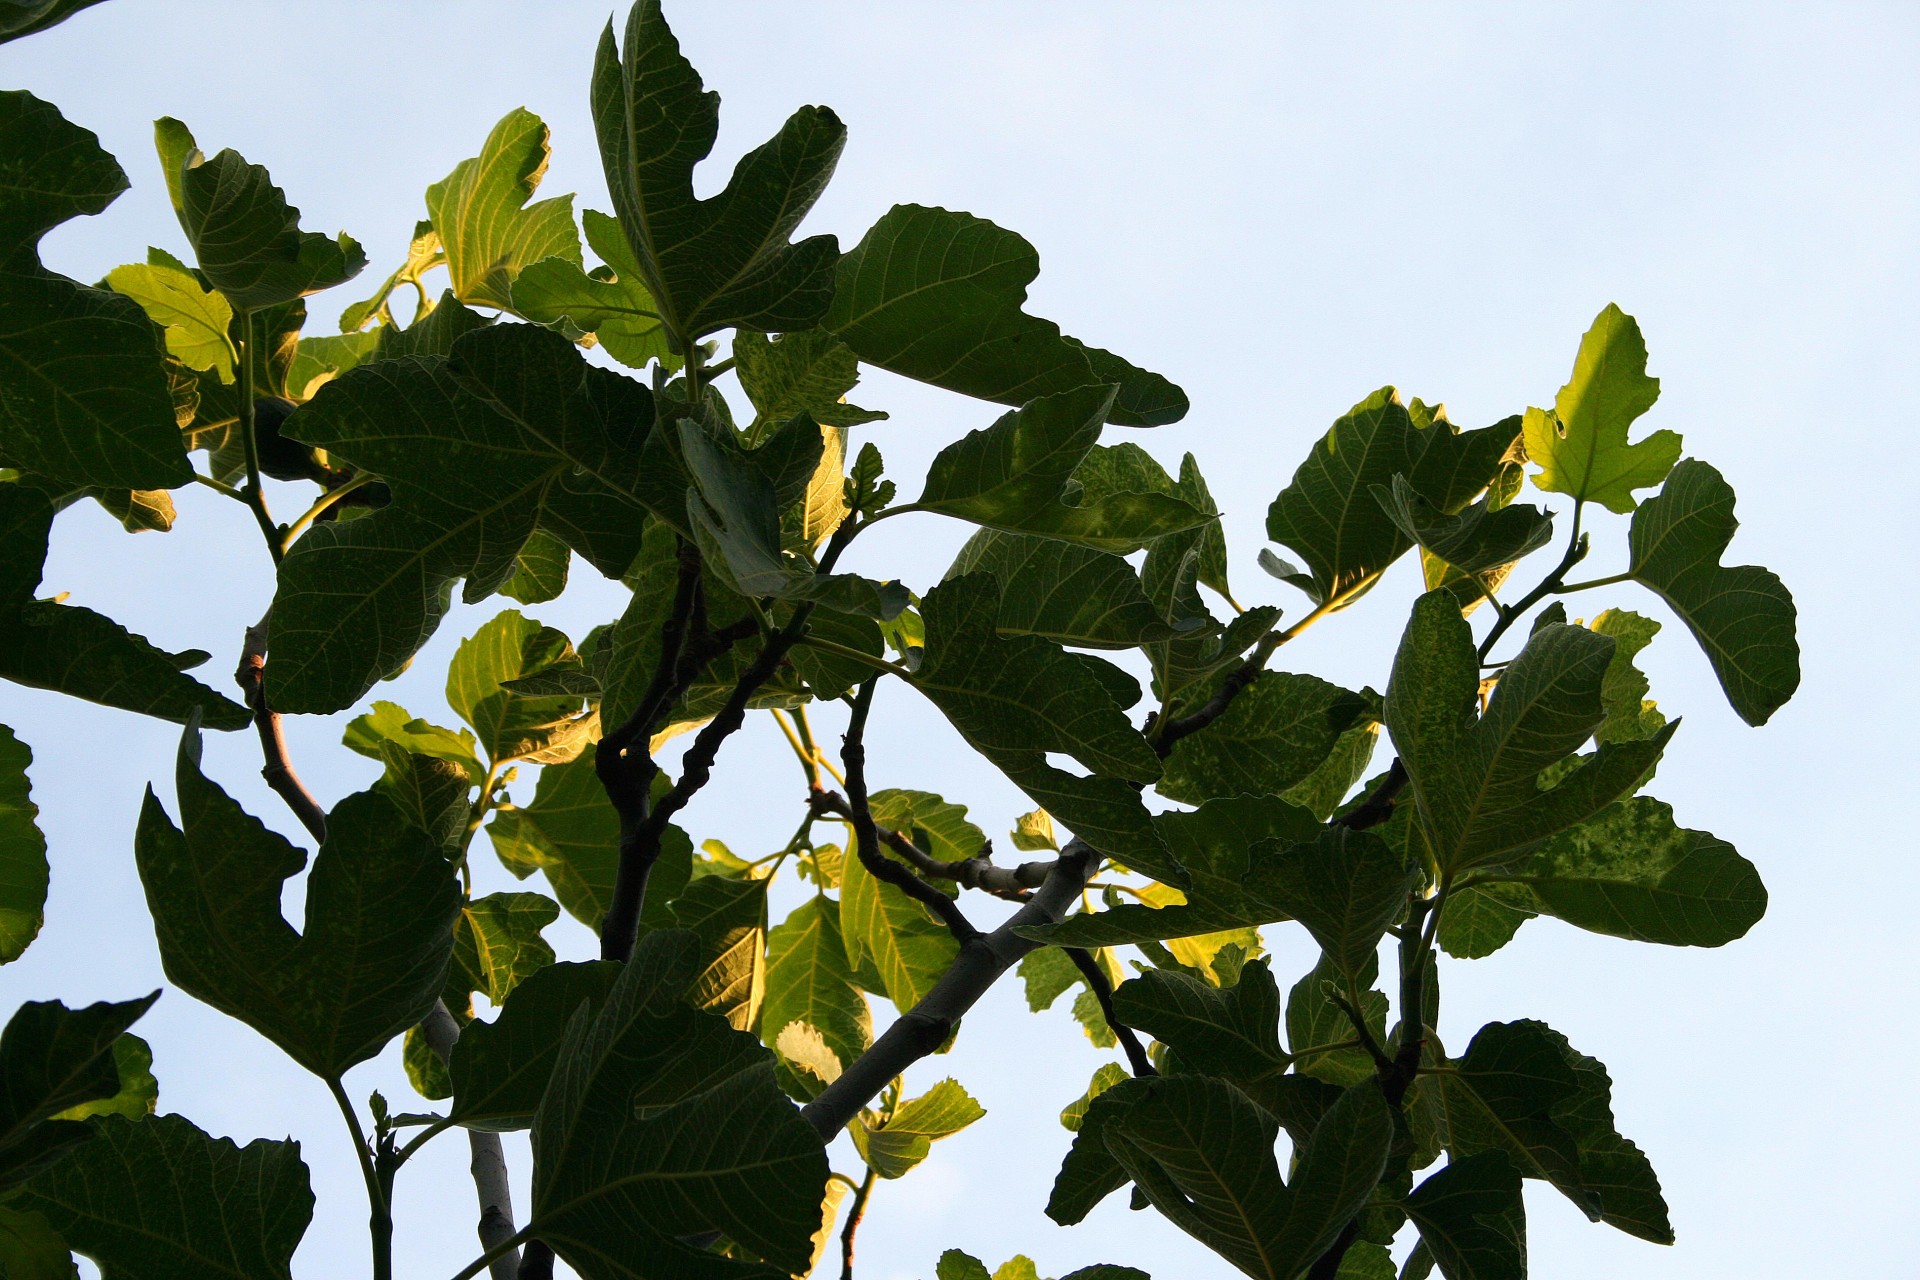 Fig Tree 1